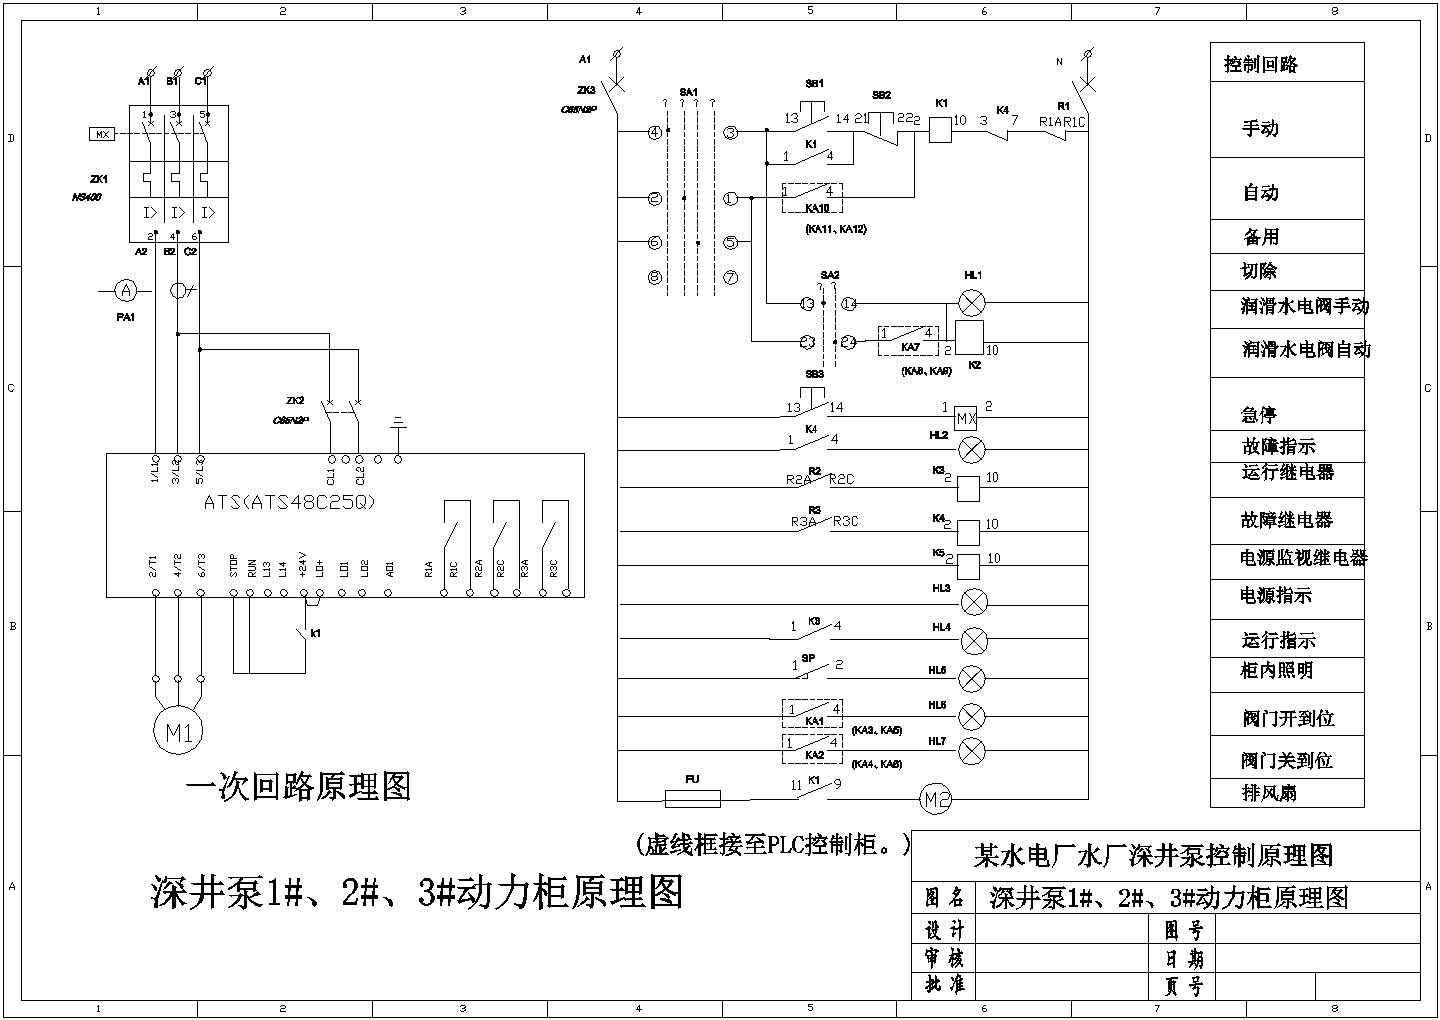 【江苏省】某水电厂水厂深井泵控制原理图